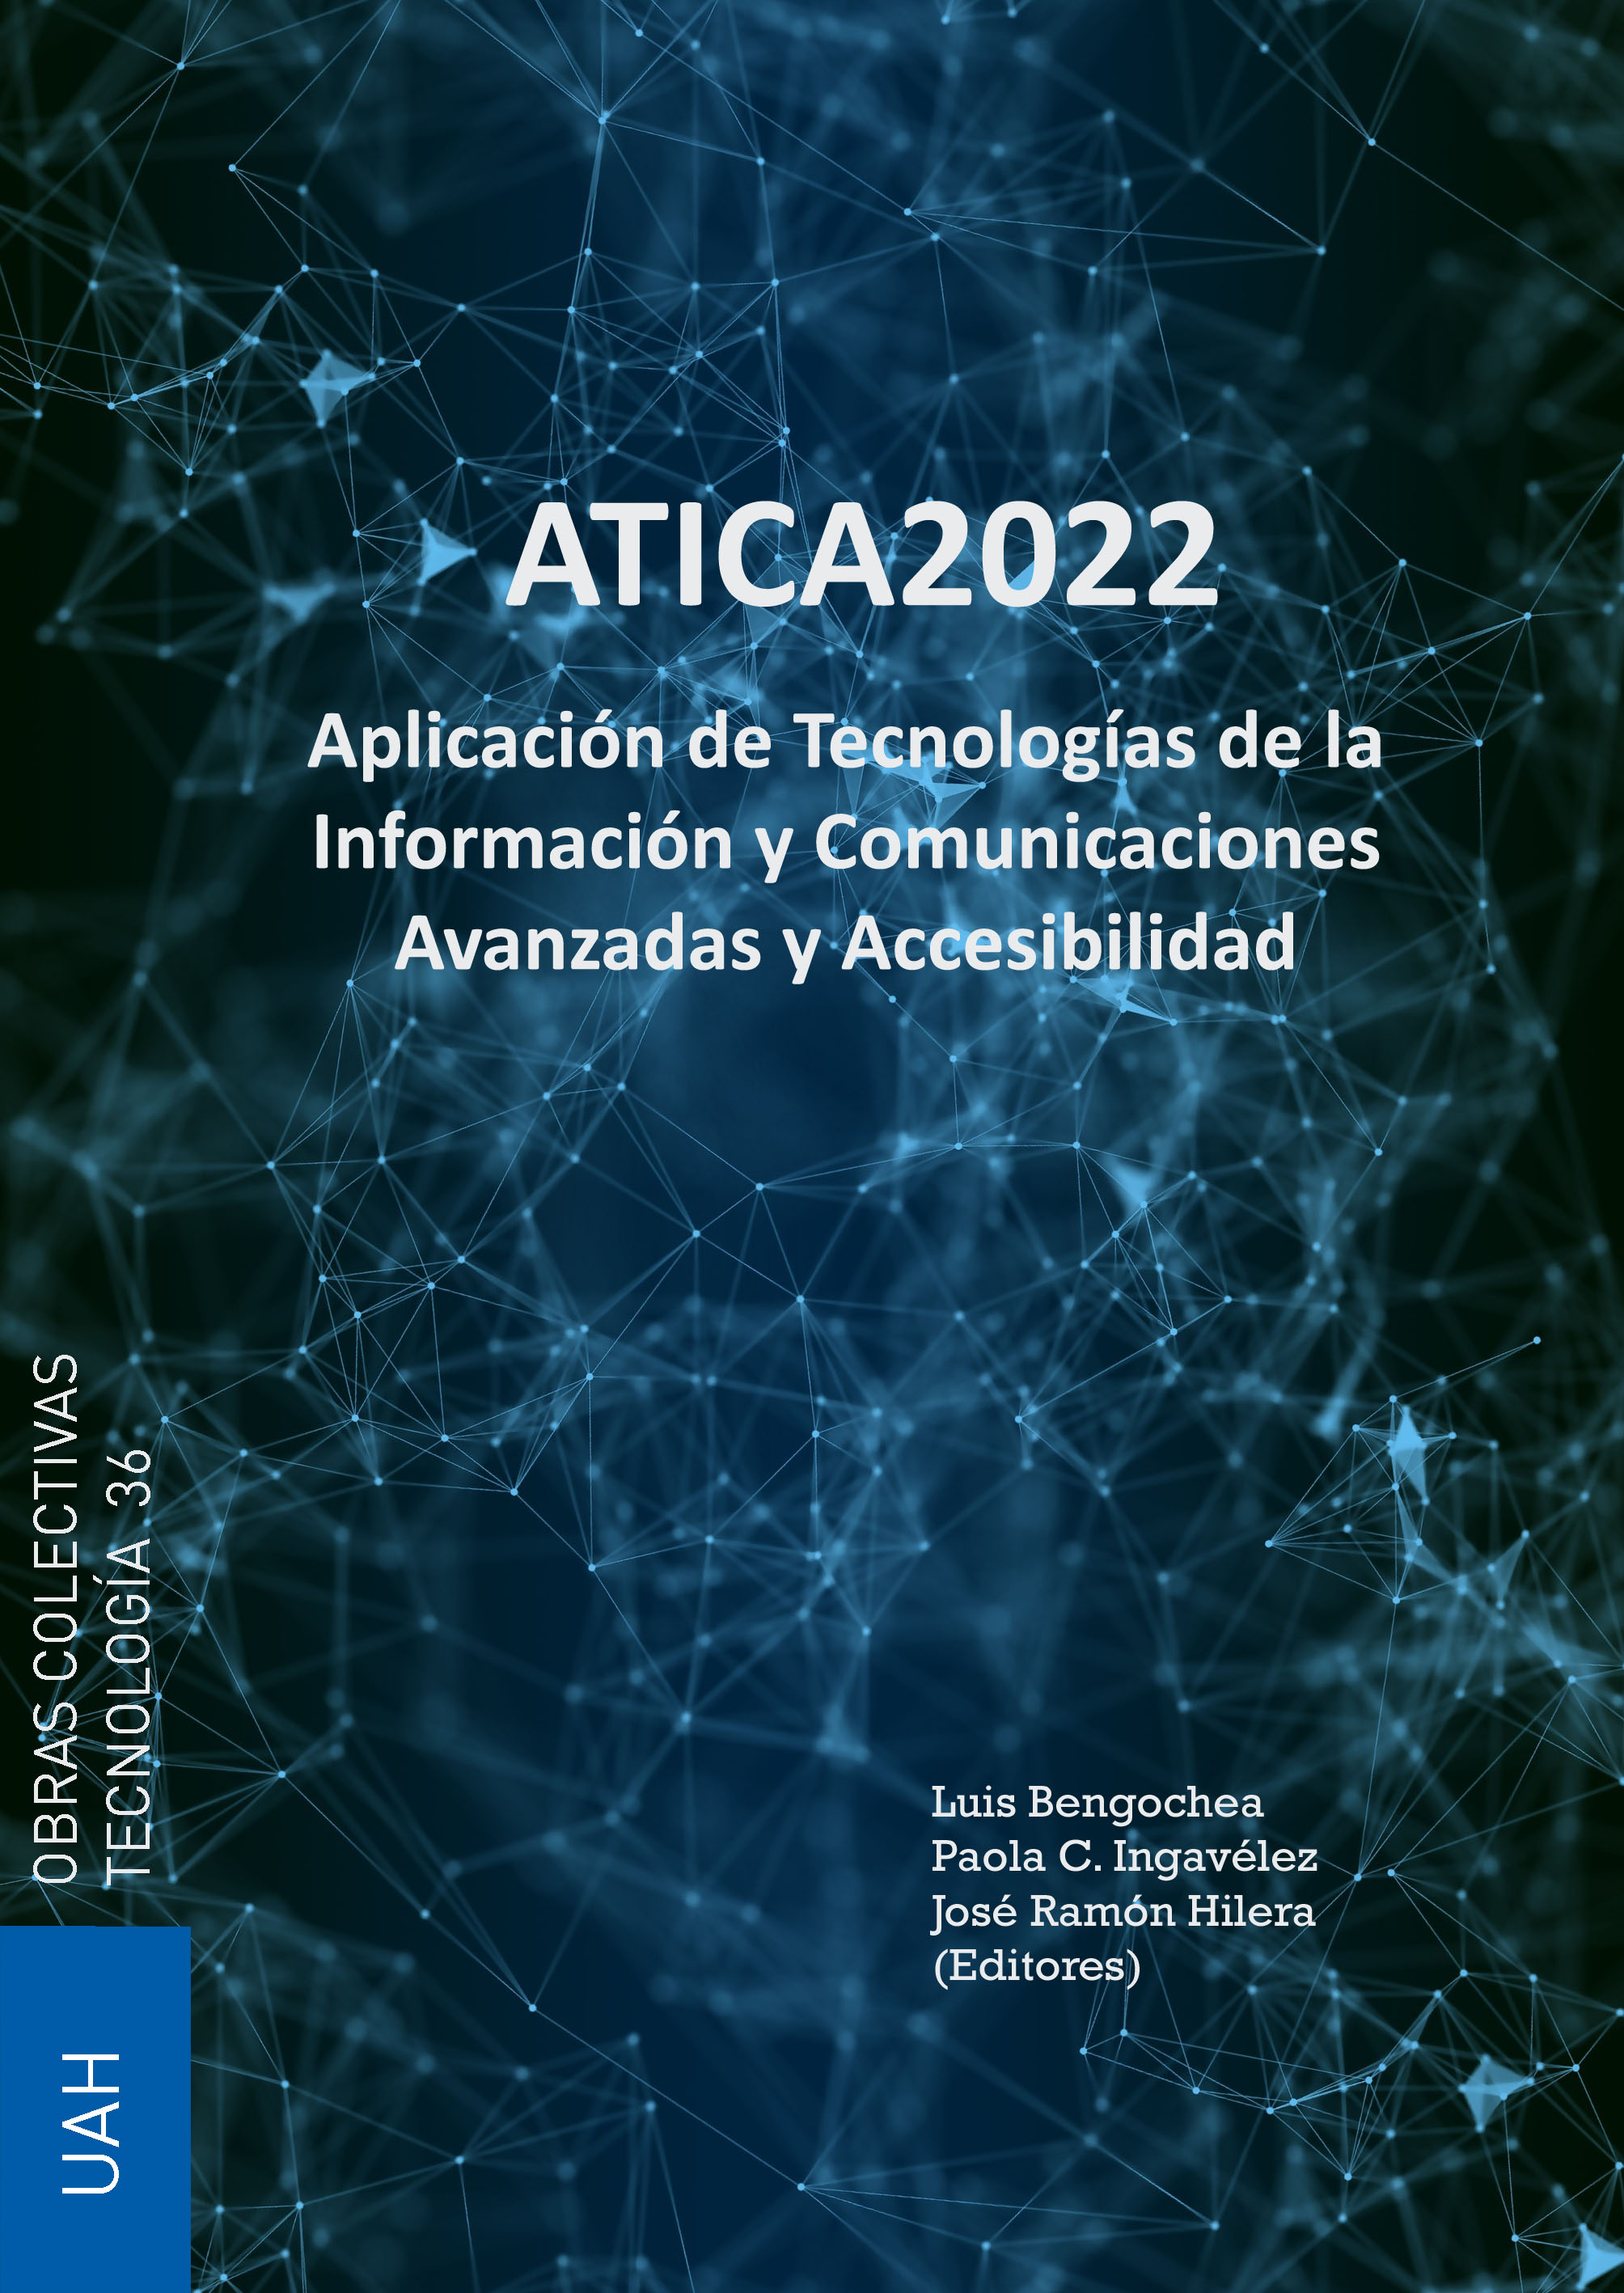 Aplicación de Tecnologías de la Información y Comunicaciones Avanzadas y Accesibilidad - ATICA2022